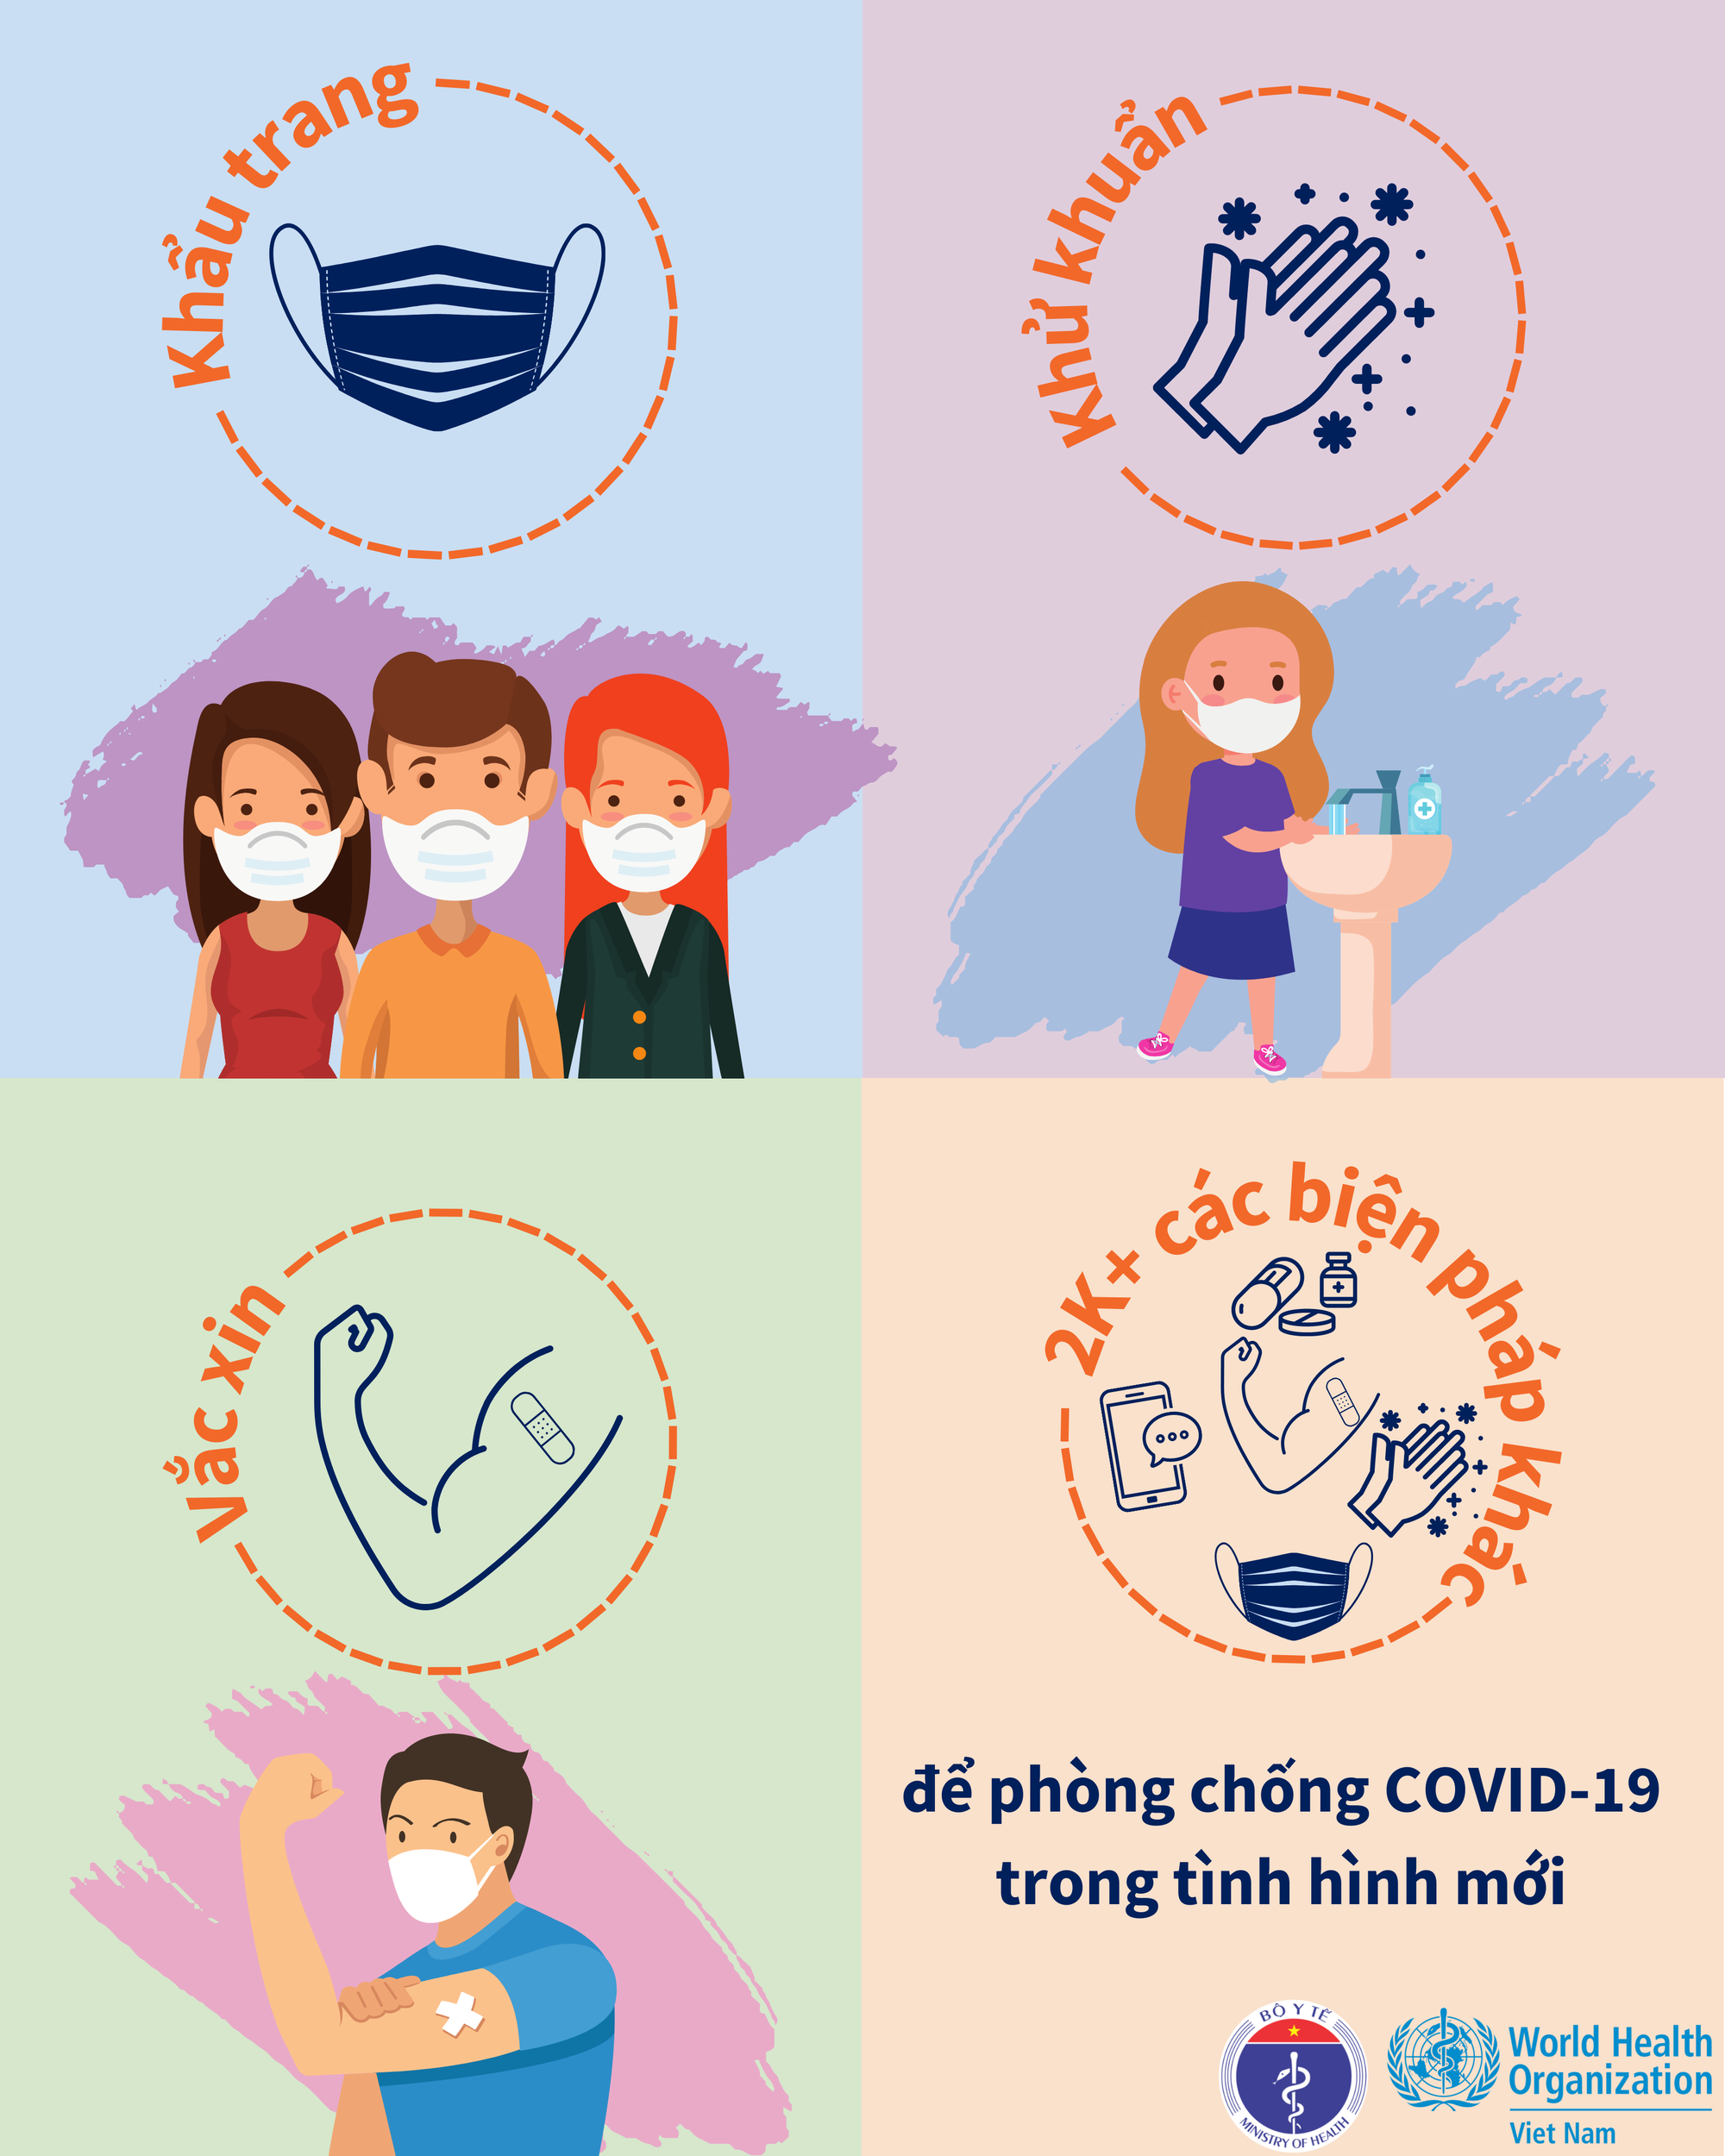 Tổ chức Y tế thế giới (WHO) và Bộ Y tế phát hành bộ infographics khuyến cáo cộng đồng thực hiện các biện pháp phòng, chống dịch COVID-19 trong tình hình mới  - Ảnh 4.